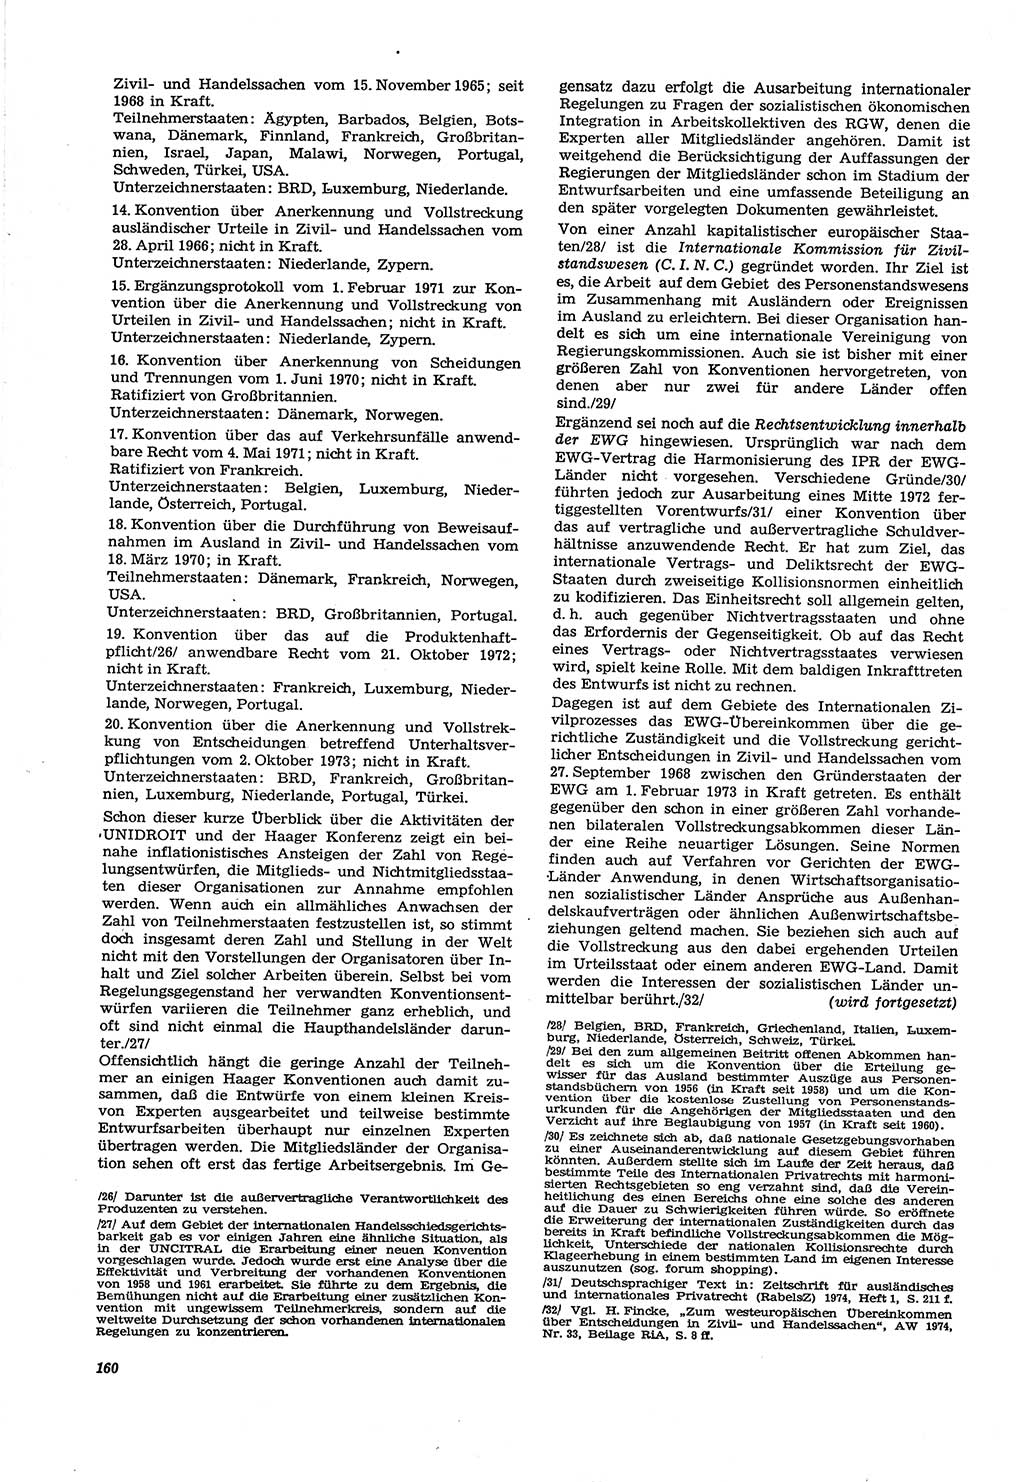 Neue Justiz (NJ), Zeitschrift für Recht und Rechtswissenschaft [Deutsche Demokratische Republik (DDR)], 30. Jahrgang 1976, Seite 160 (NJ DDR 1976, S. 160)